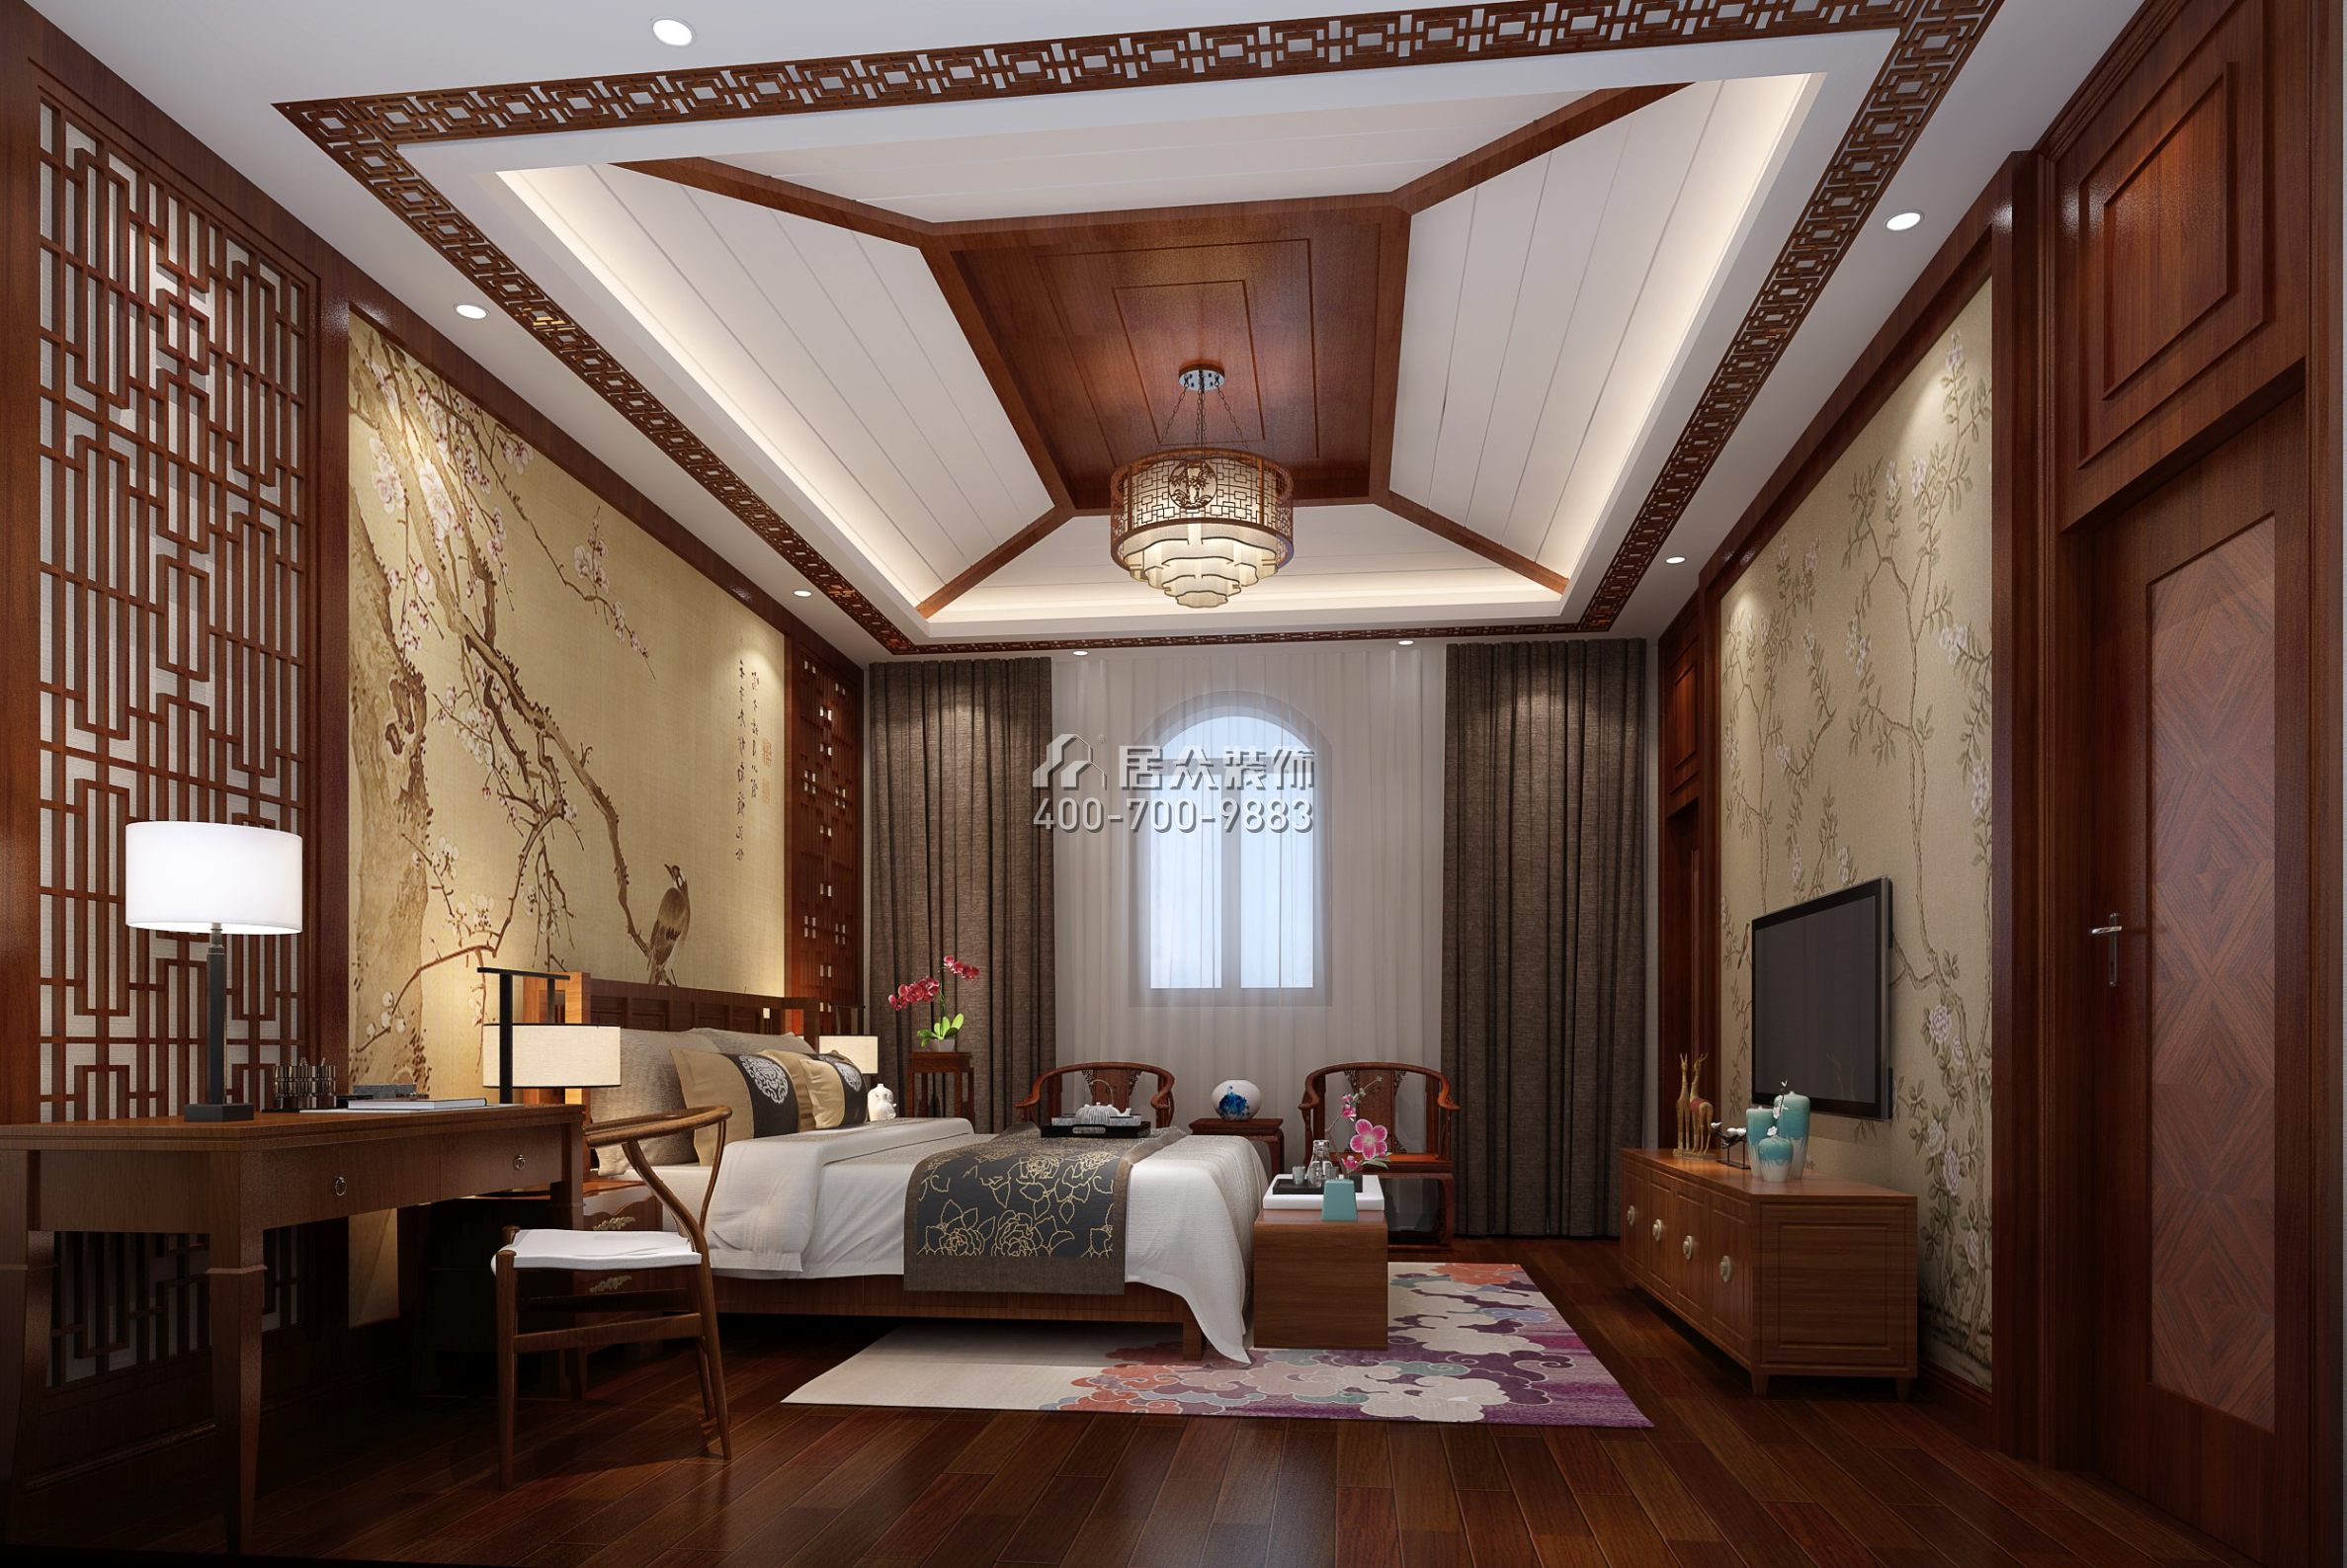 秋长白石自建房340平方米中式风格复式户型卧室装修效果图